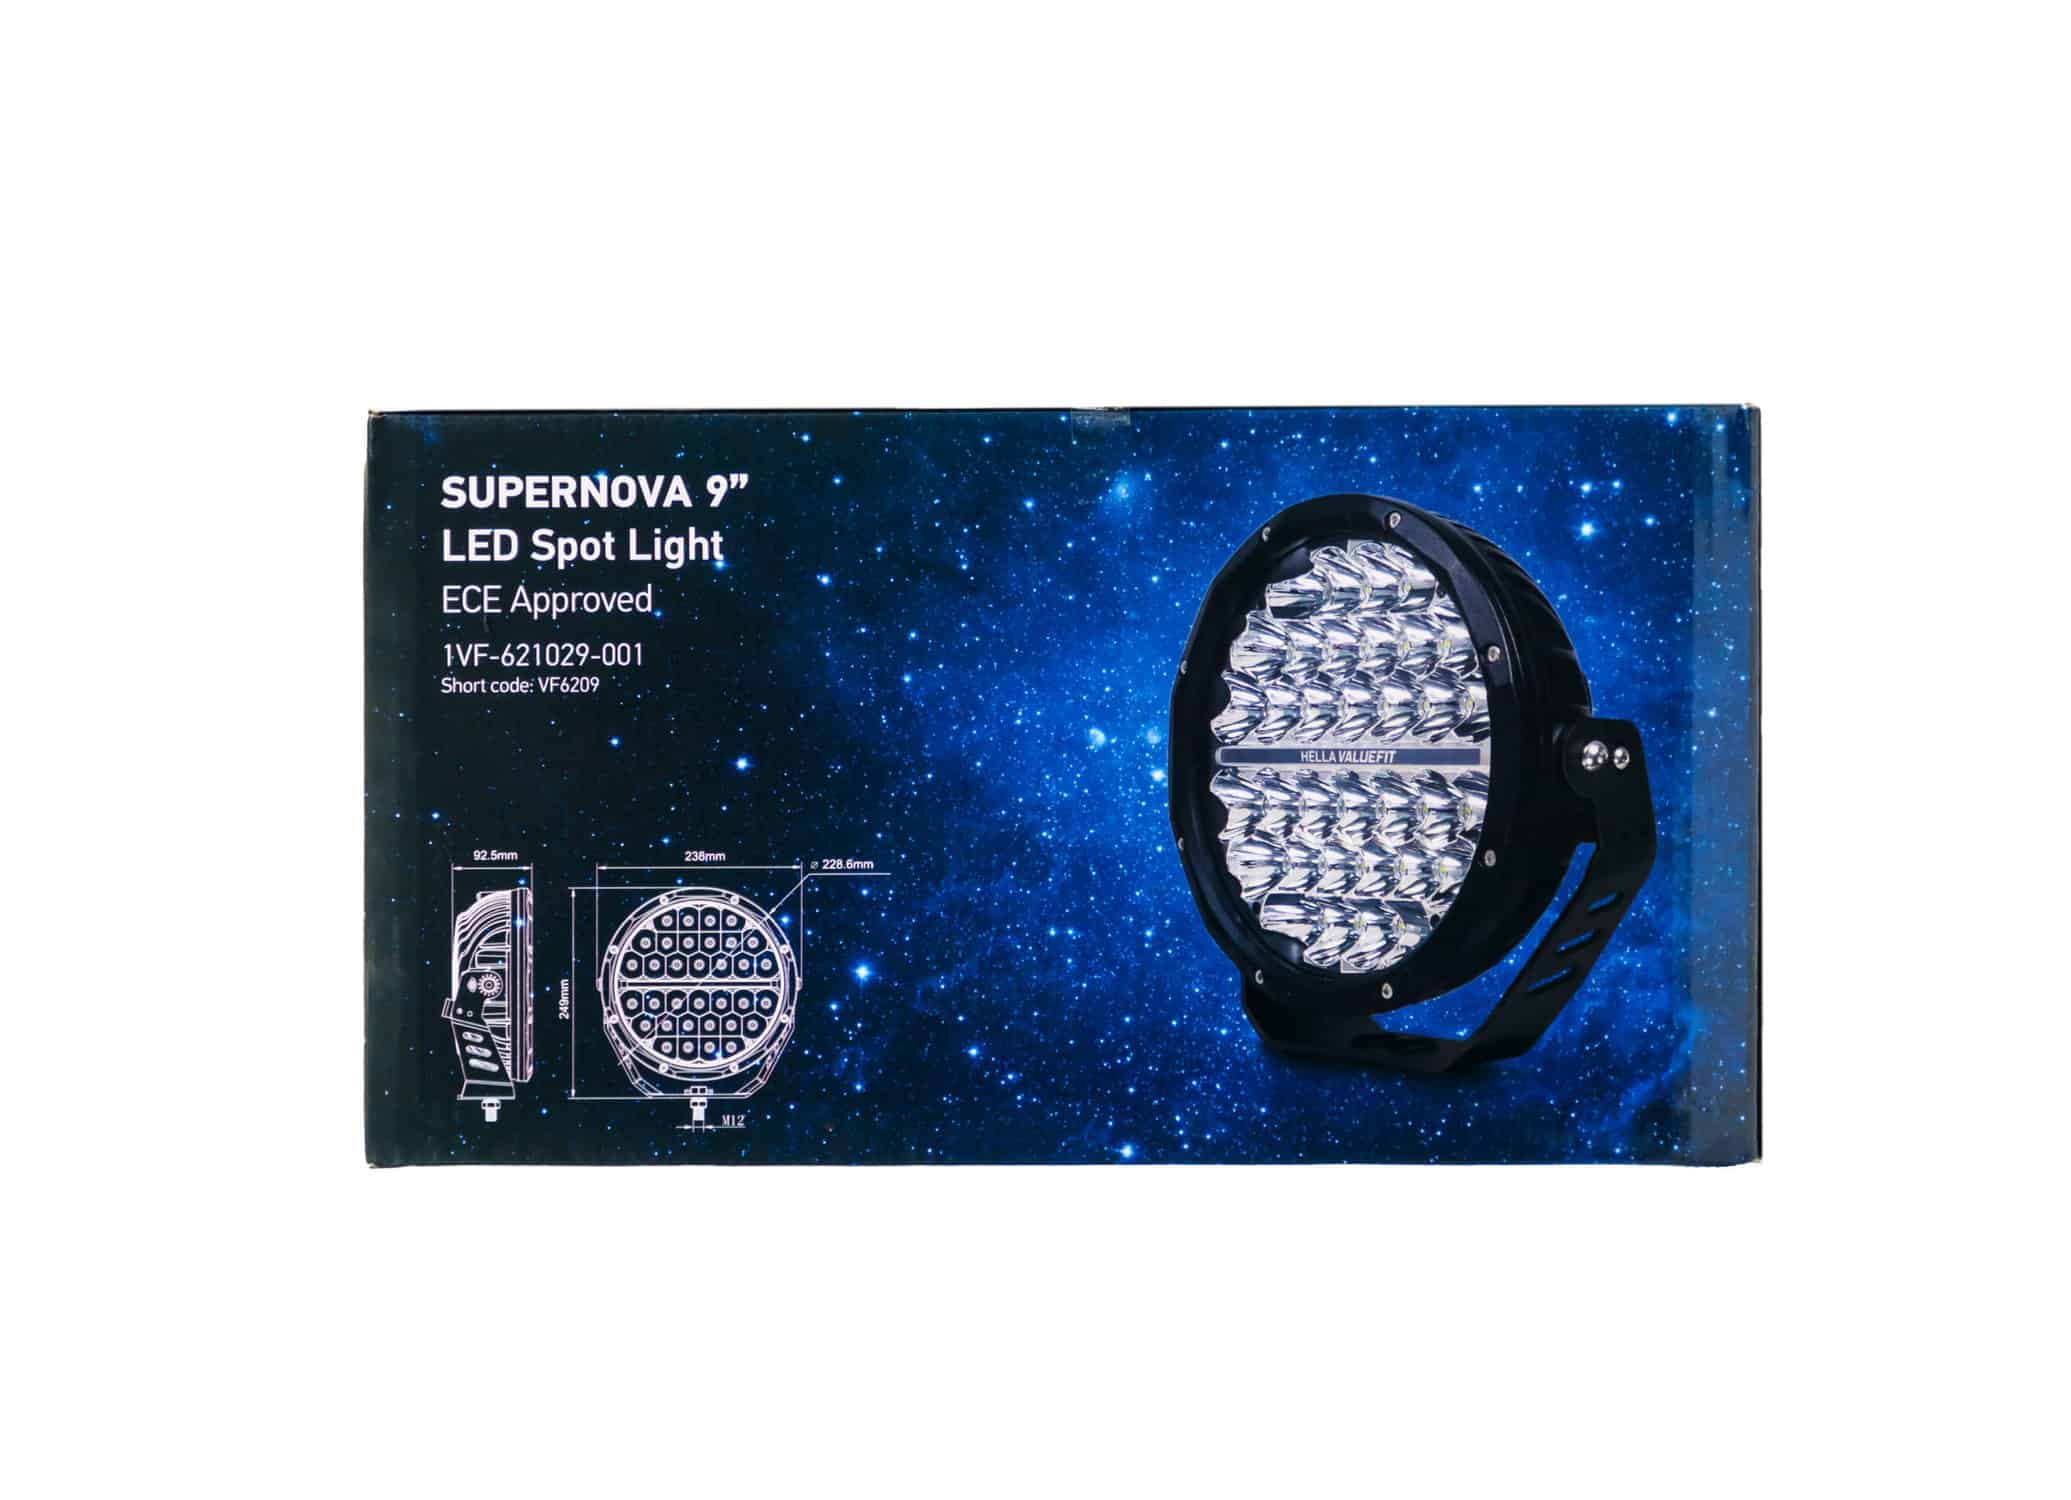 Hella ValueFit 9 Supernova LED Spot Light ECE Approved (Single